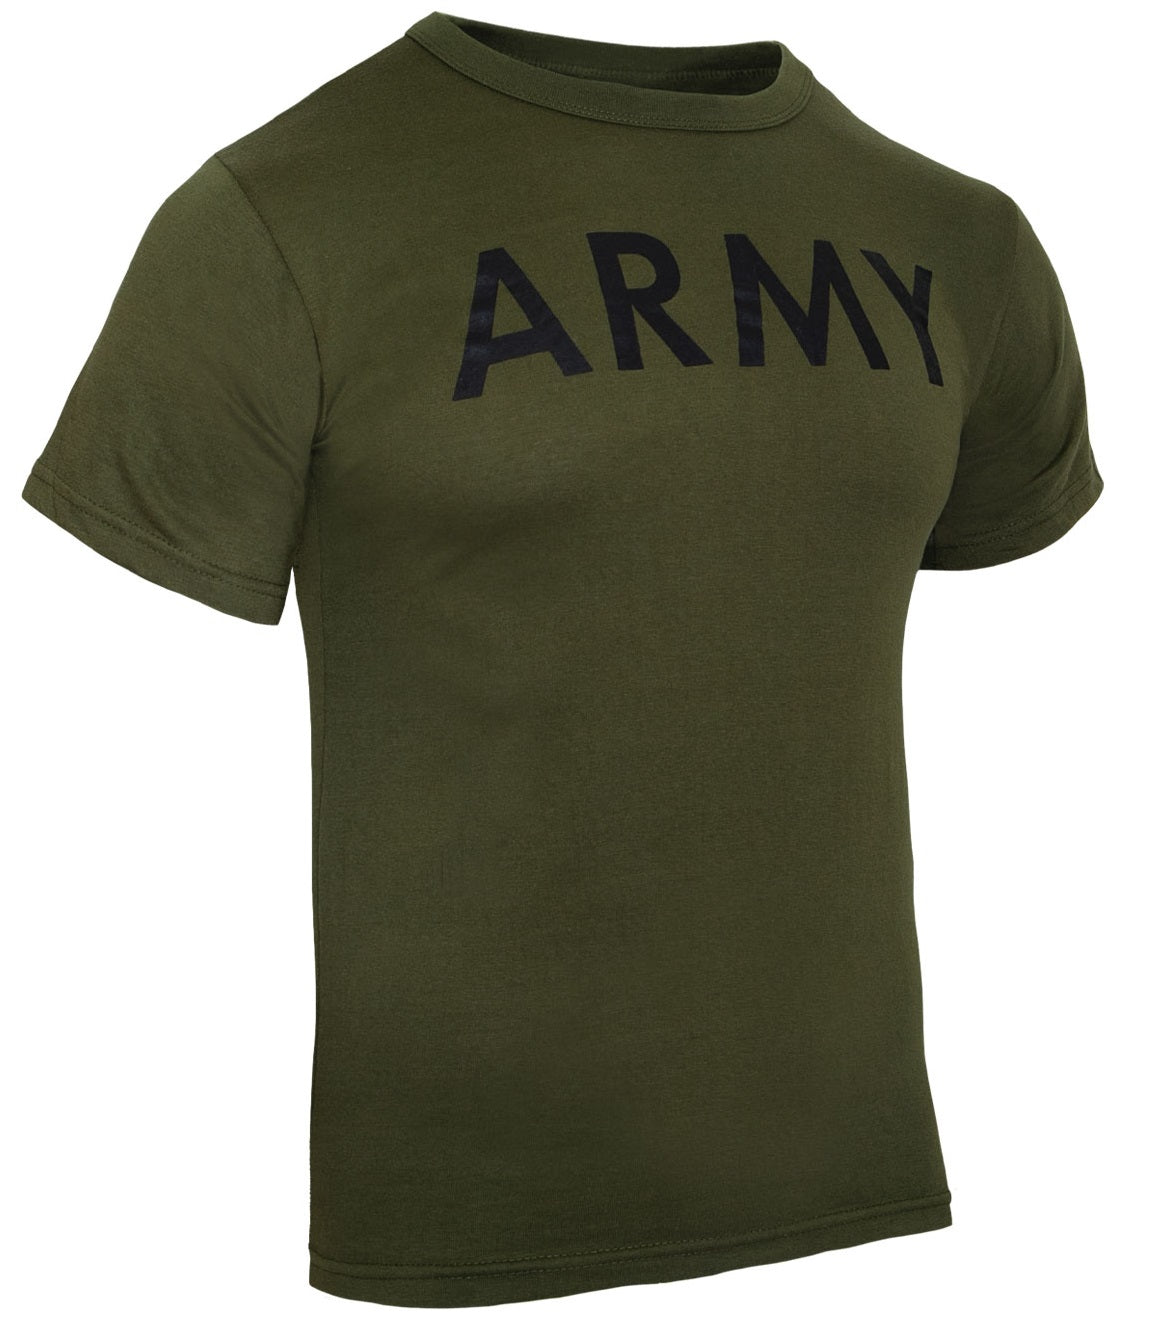 Rothco Olive Drab Military PT Shirt - ARMY – Military Uniform Supply, Inc.